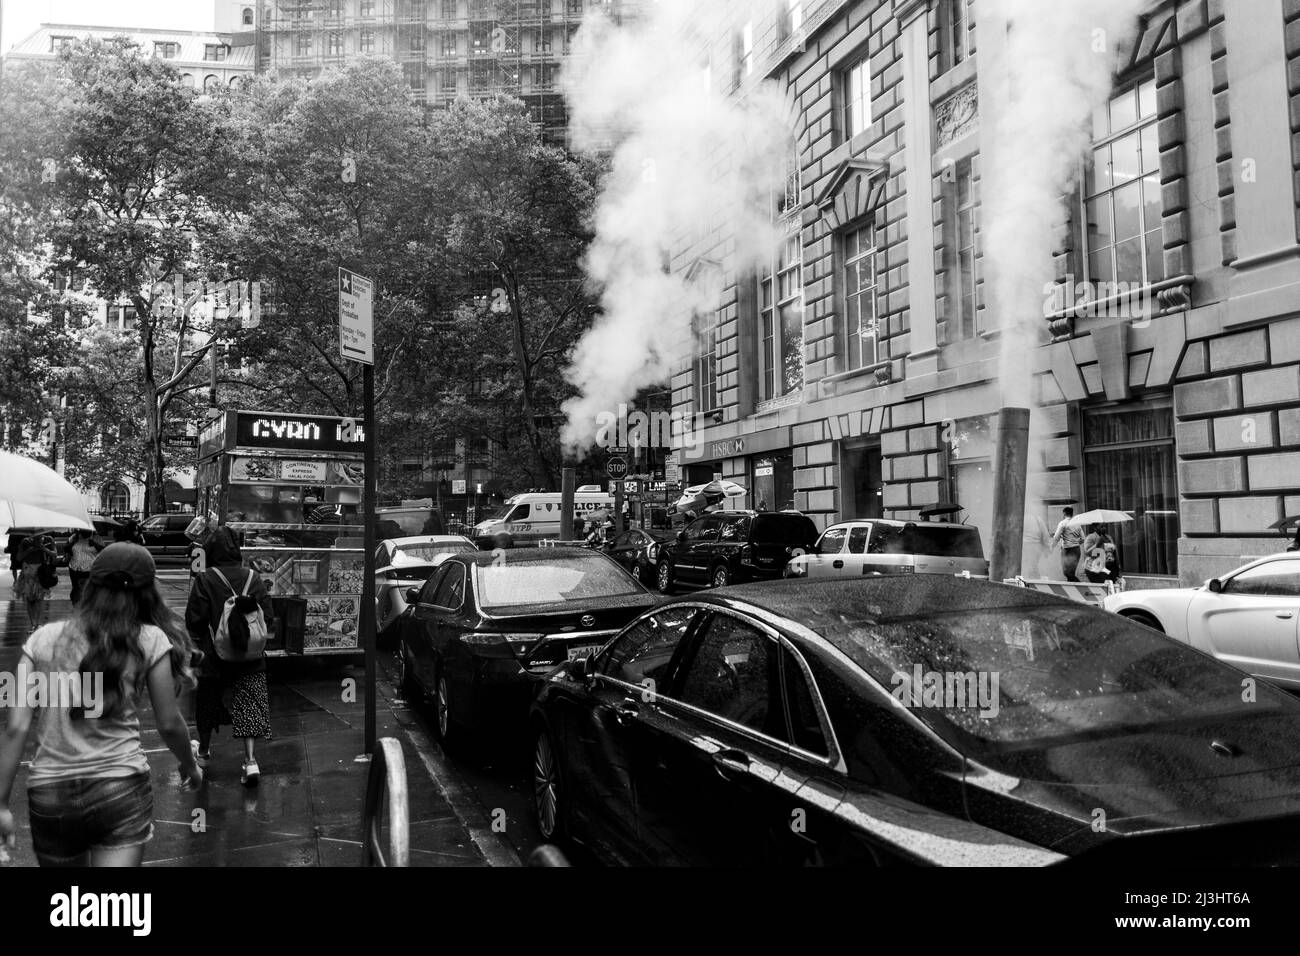 Quartier financier, New York City, NY, USA, Rainy Day à Wall Street avec évent de vapeur orange au milieu de la rue. Banque D'Images